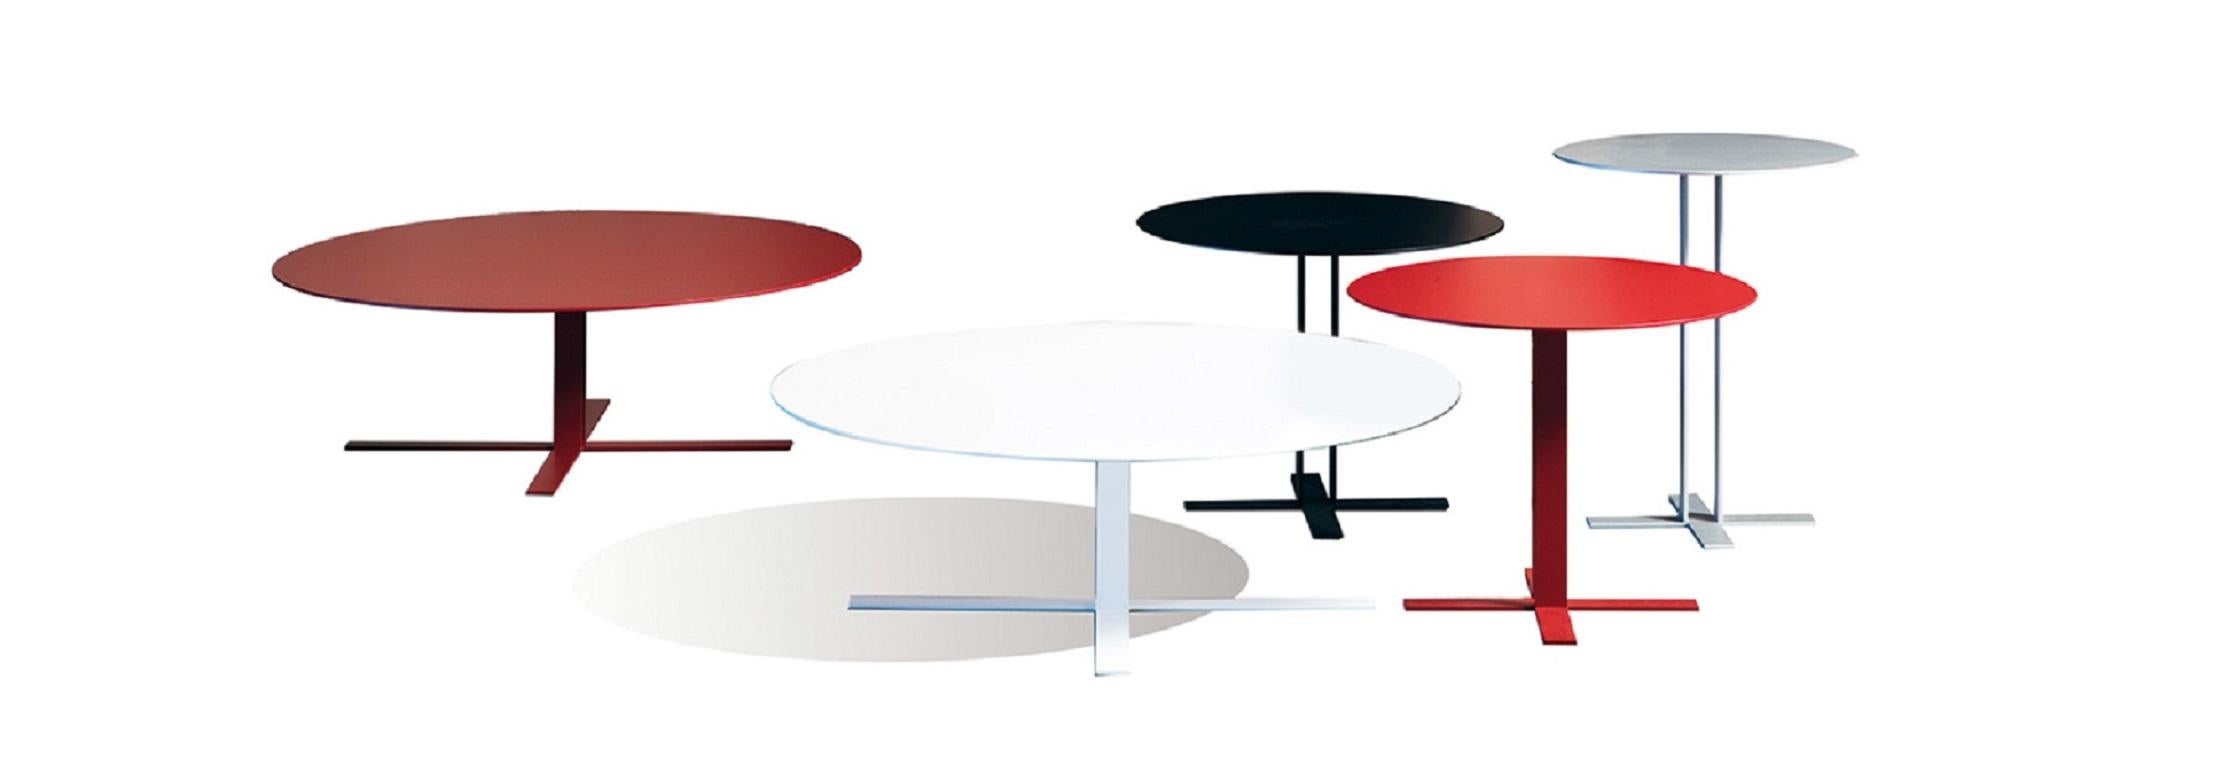 Ein leichter, klarer und stilvoller Tisch mit einem starken, sauberen Design und einem eleganten, zierlichen Geist. Sockel aus Metall und Platte aus MDF. Erhältlich in einer matt lackierten Ausführung.

Der Designer Giuseppe Viganò widmet sich dem